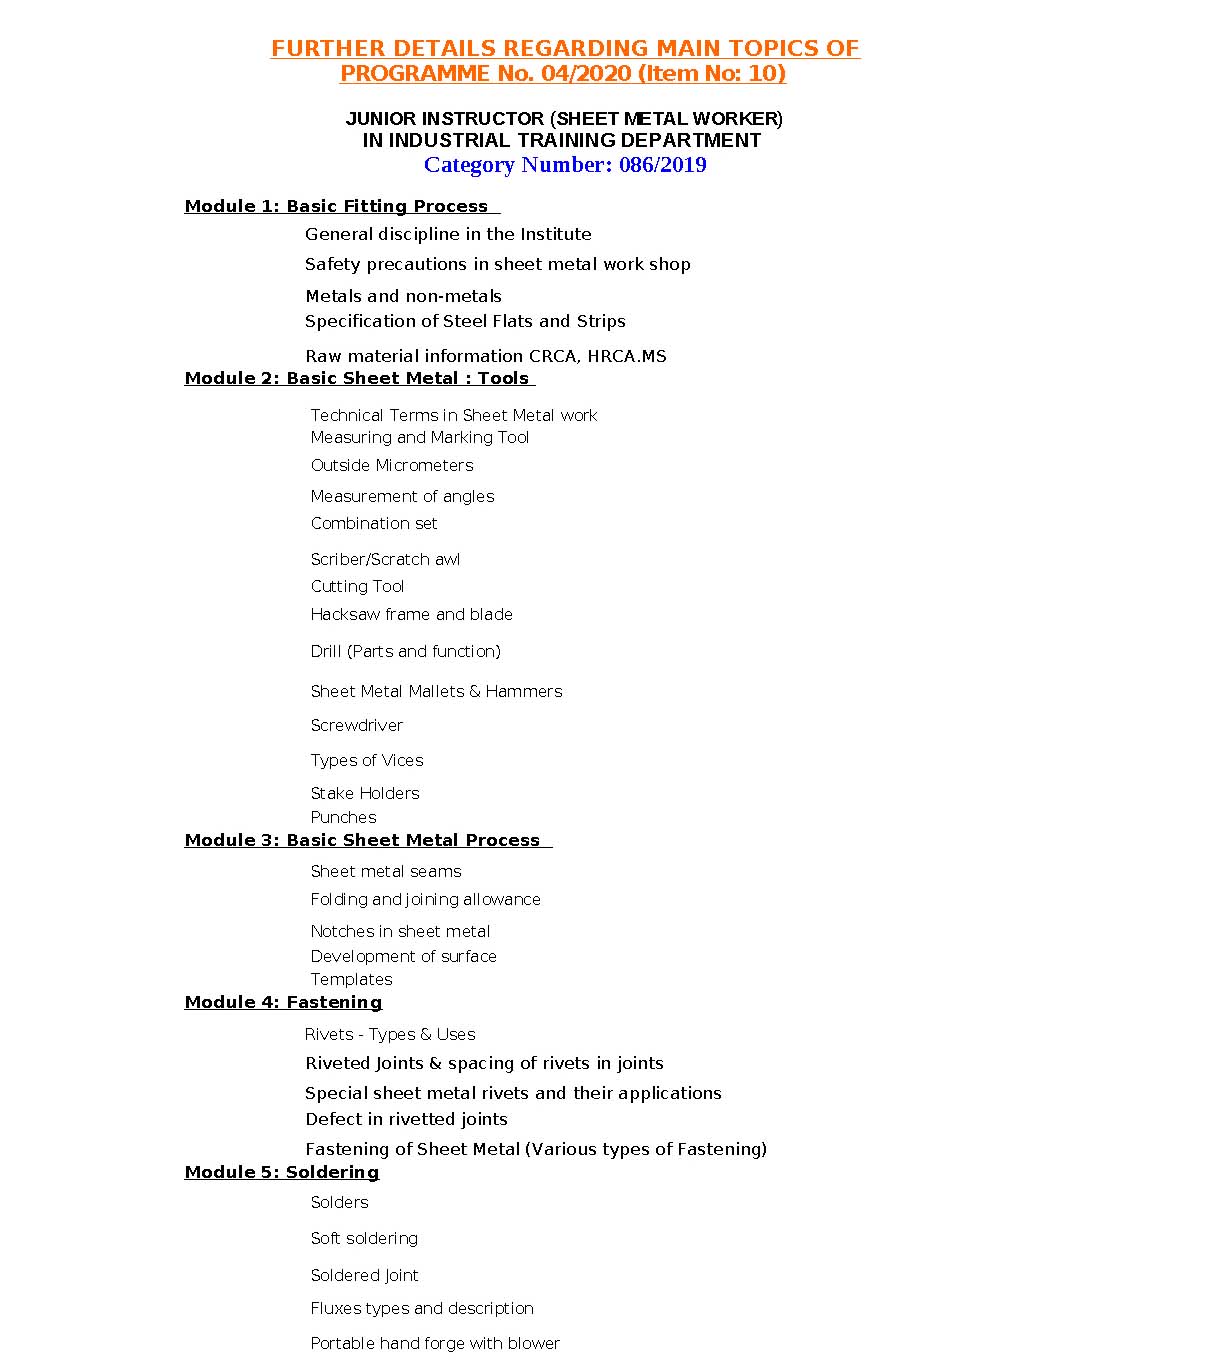 KPSC Junior Instructor Sheet Metal Worker Exam Syllabus - Notification Image 1